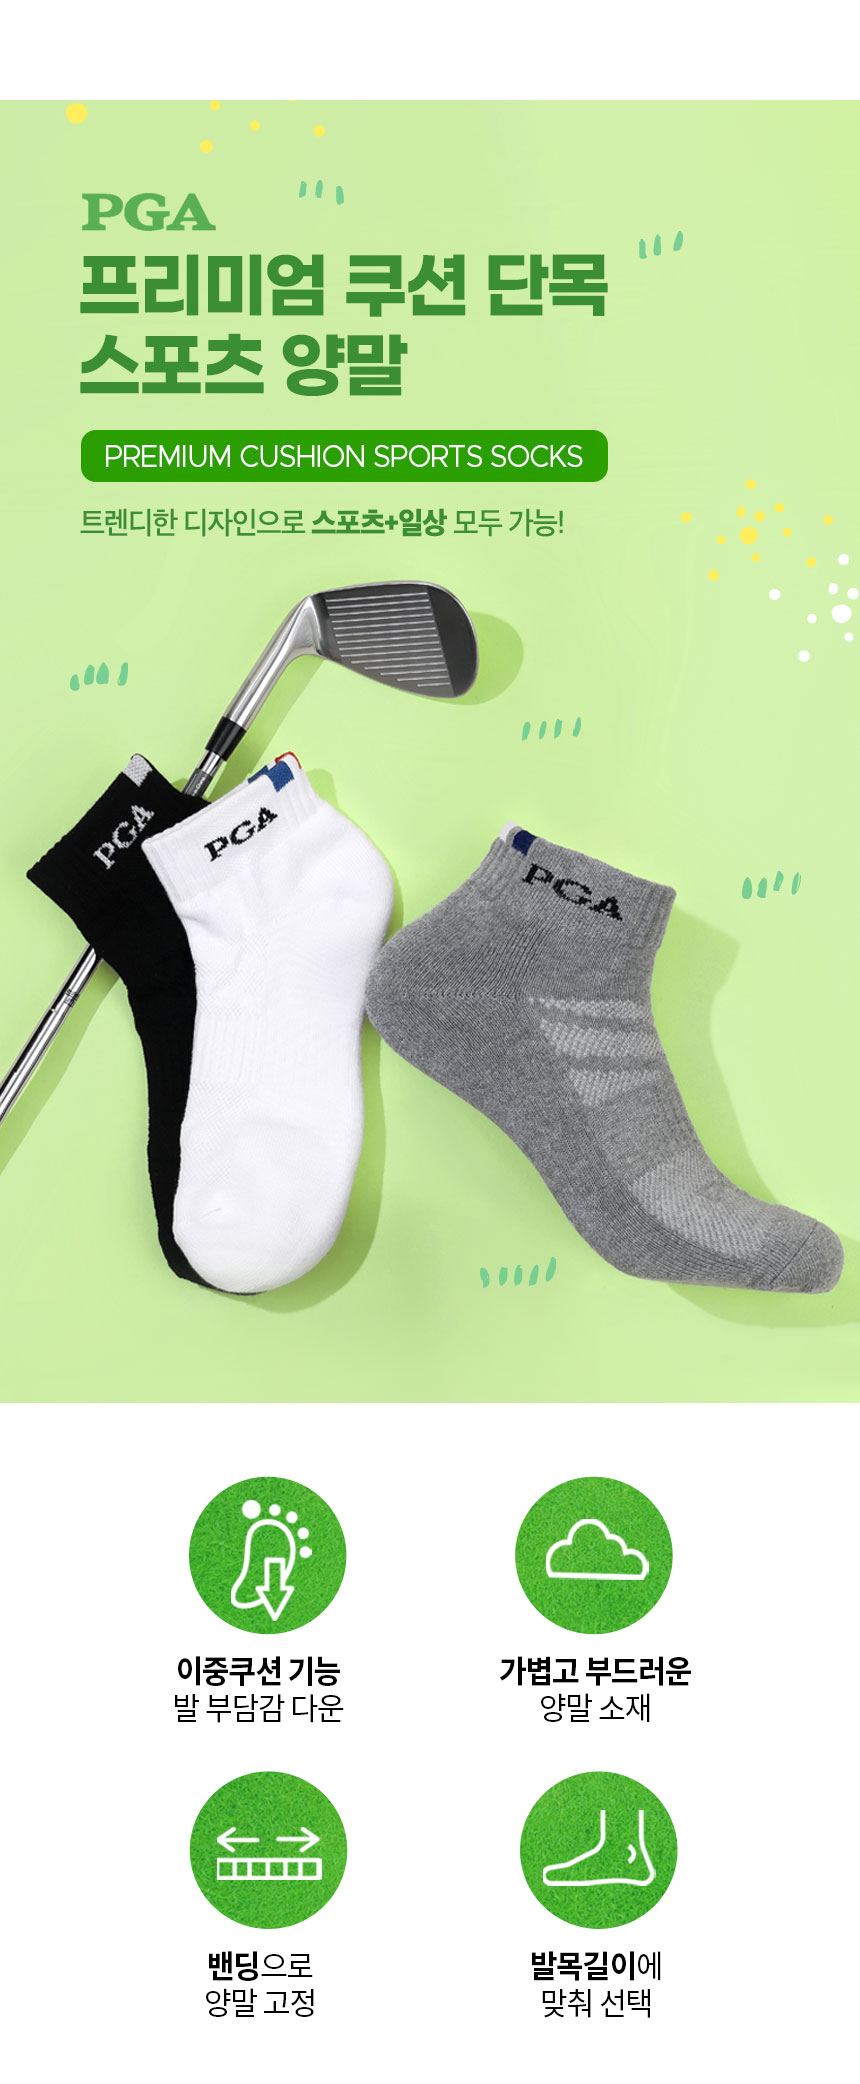 PGA_premium_cushion_short_sports_socks_PGAM41_22_01.jpg